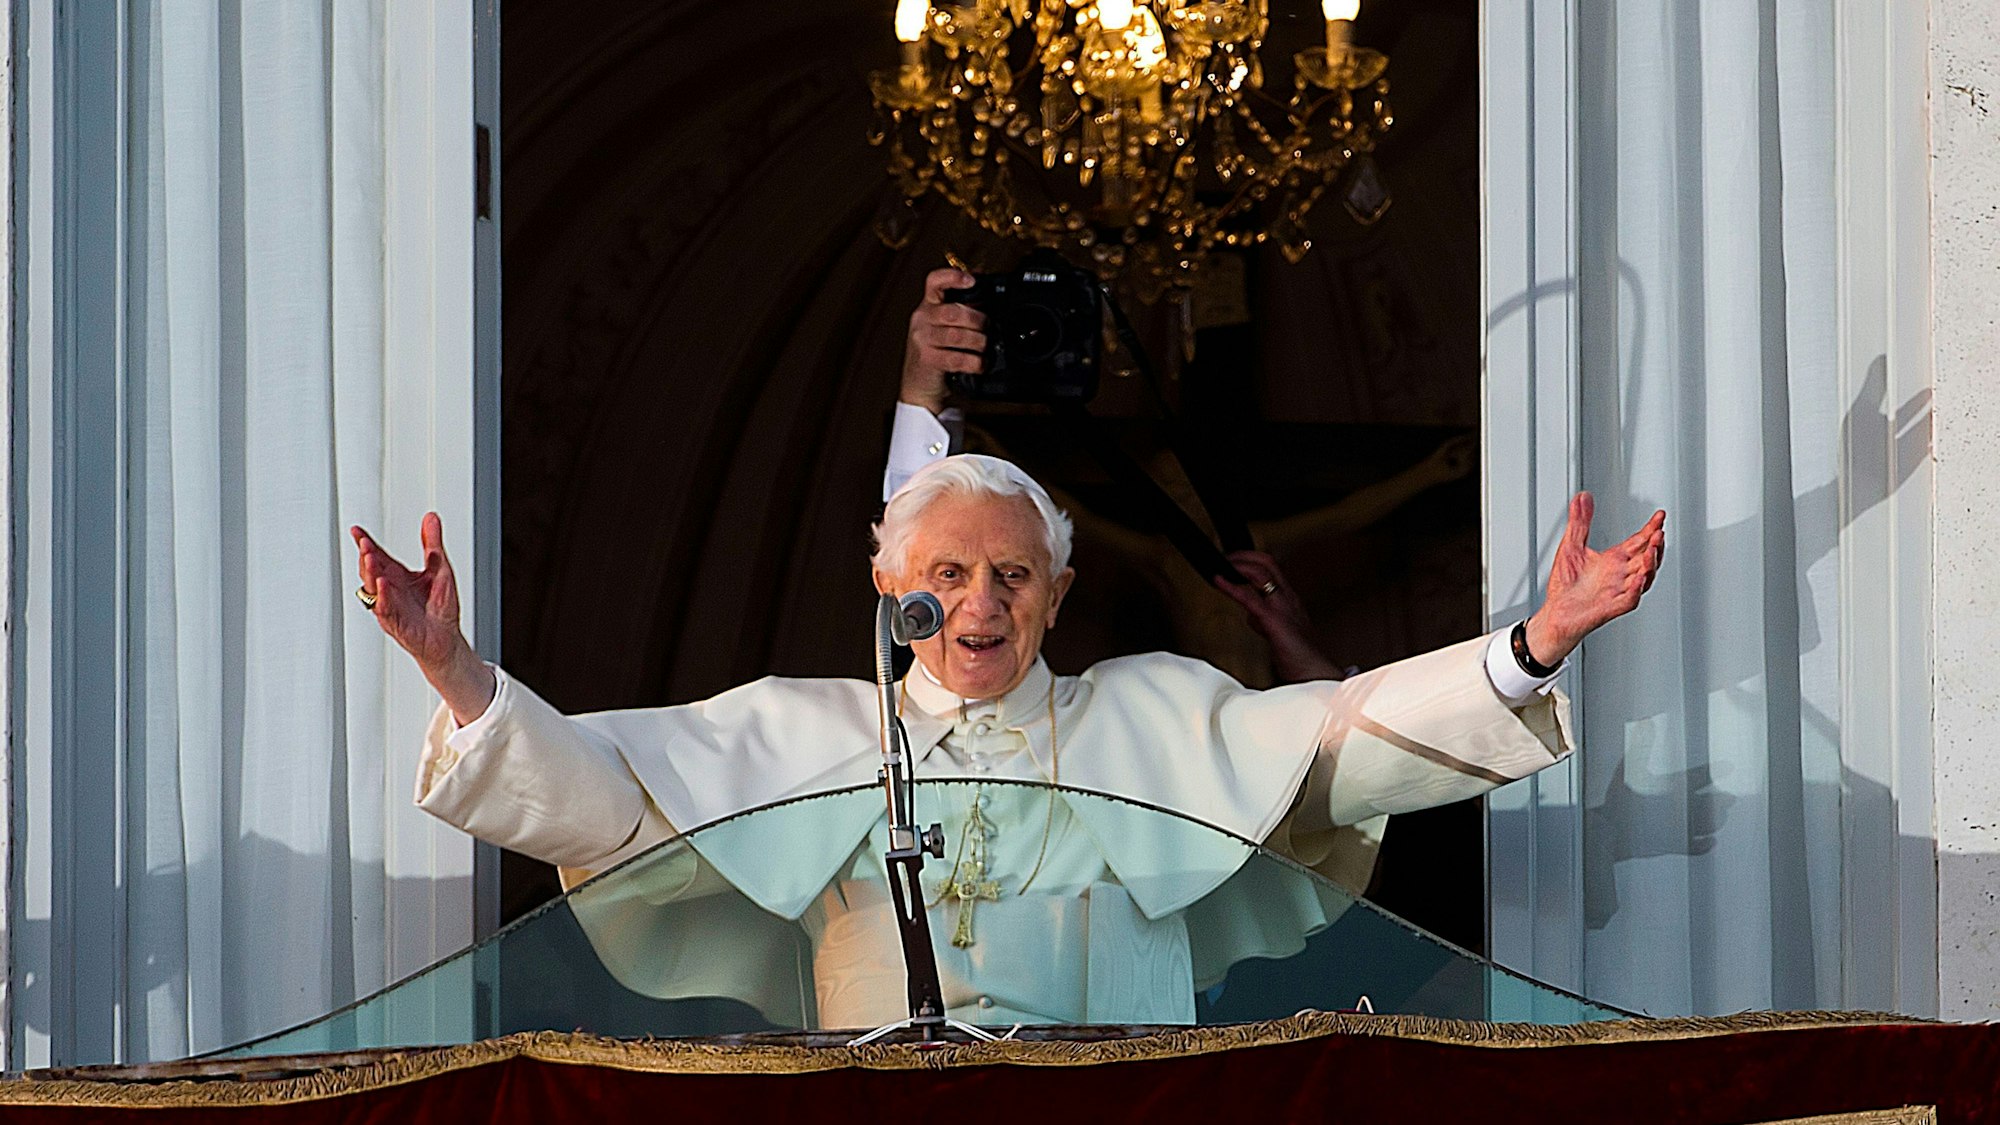 Der damalige Papst Benedikt XVI. grüßt eine jubelnde Menge, die sich vor dem Balkonfenster der päpstlichen Sommerresidenz Castel Gandolfo am Stadtrand von Rom versammelt hat, bevor er einige Stunden später offiziell sein Pontifikat beendet.